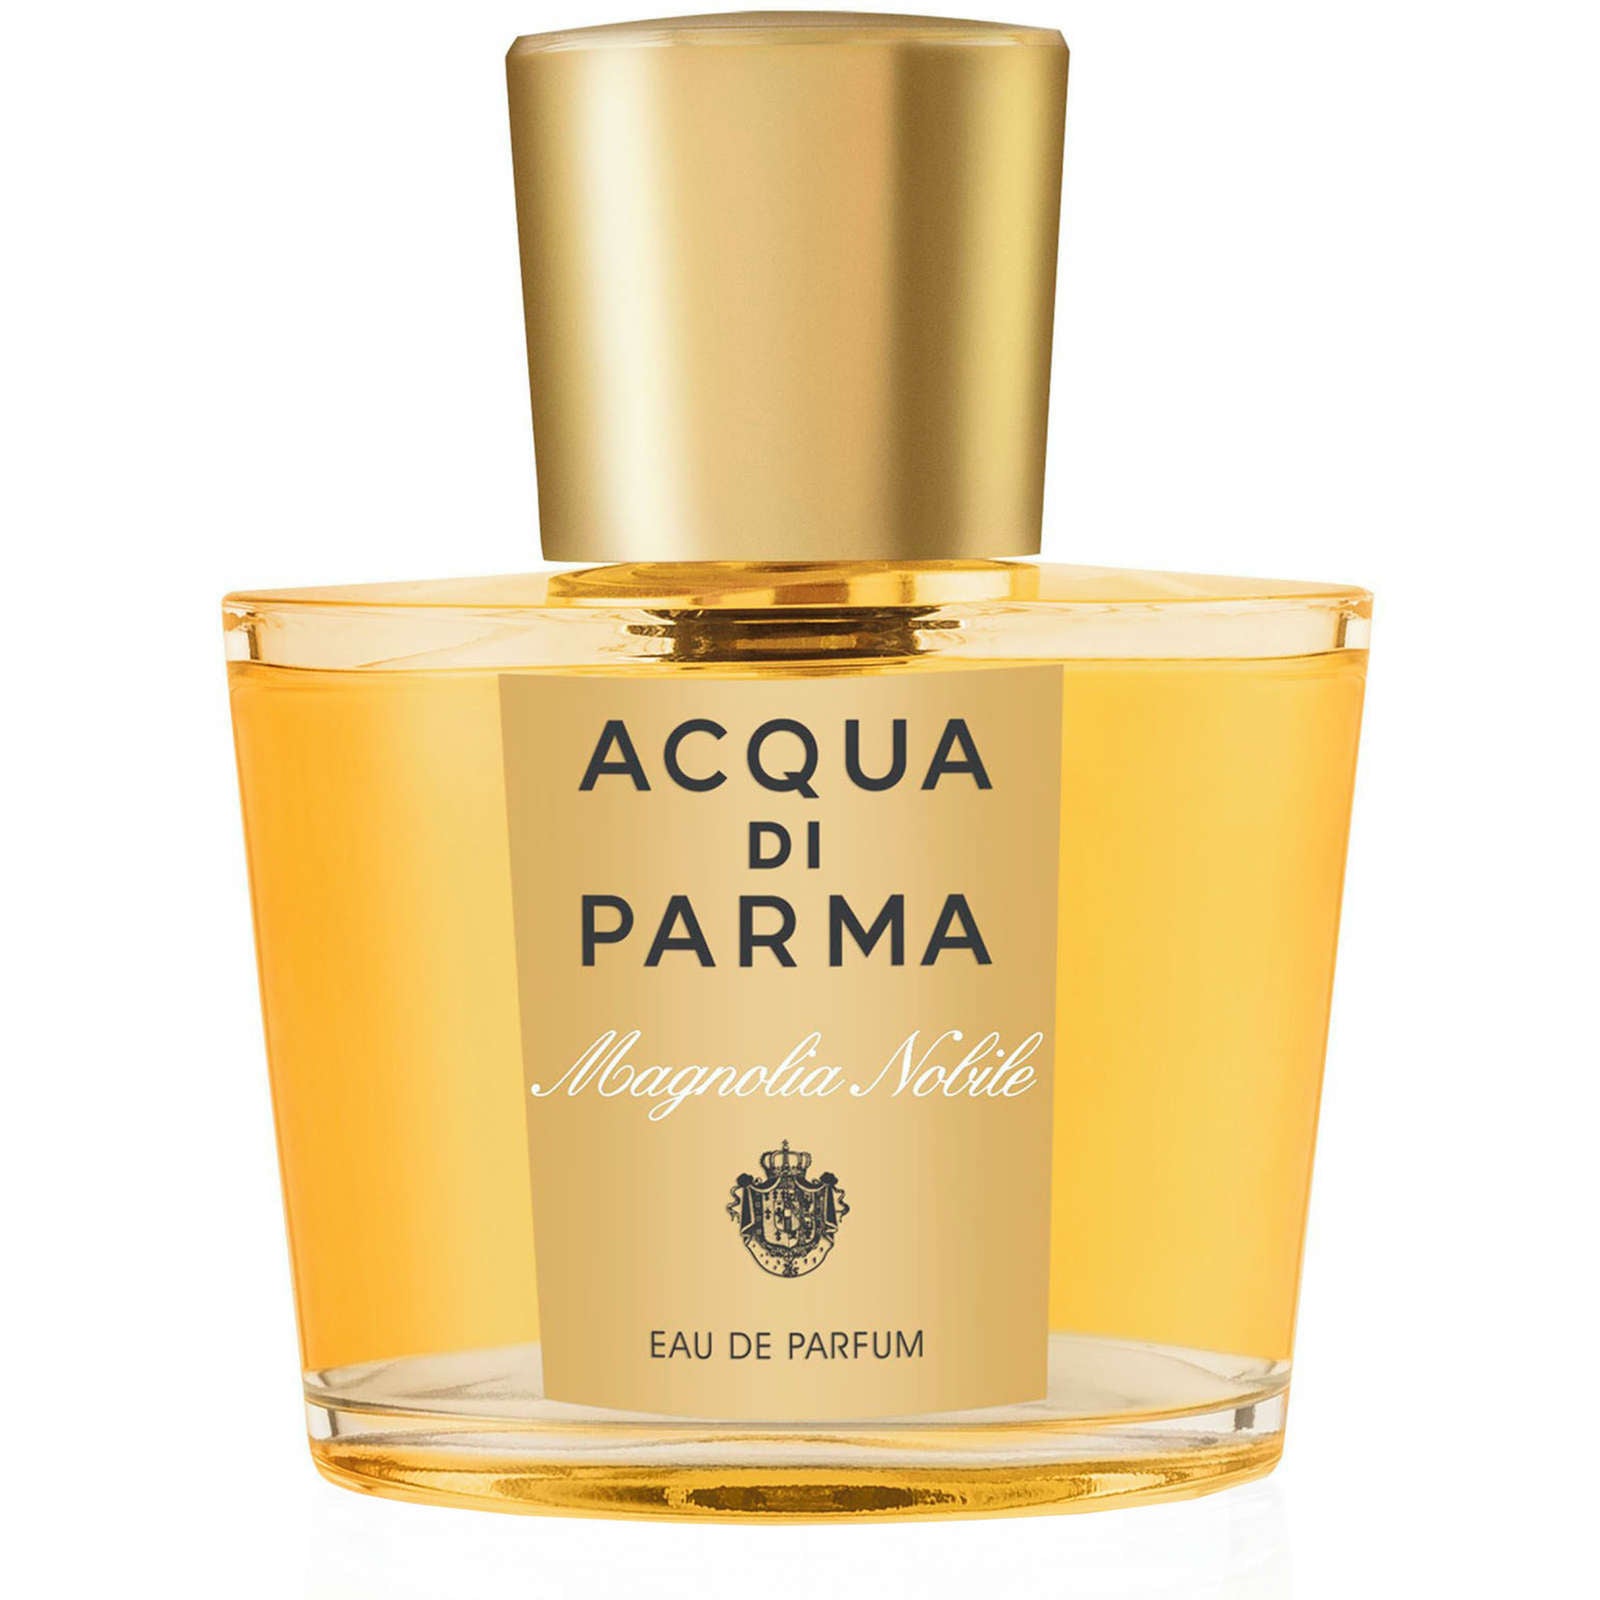 Acqua Di Parma Magnolia Eau De Parfum Spray detoks.ca